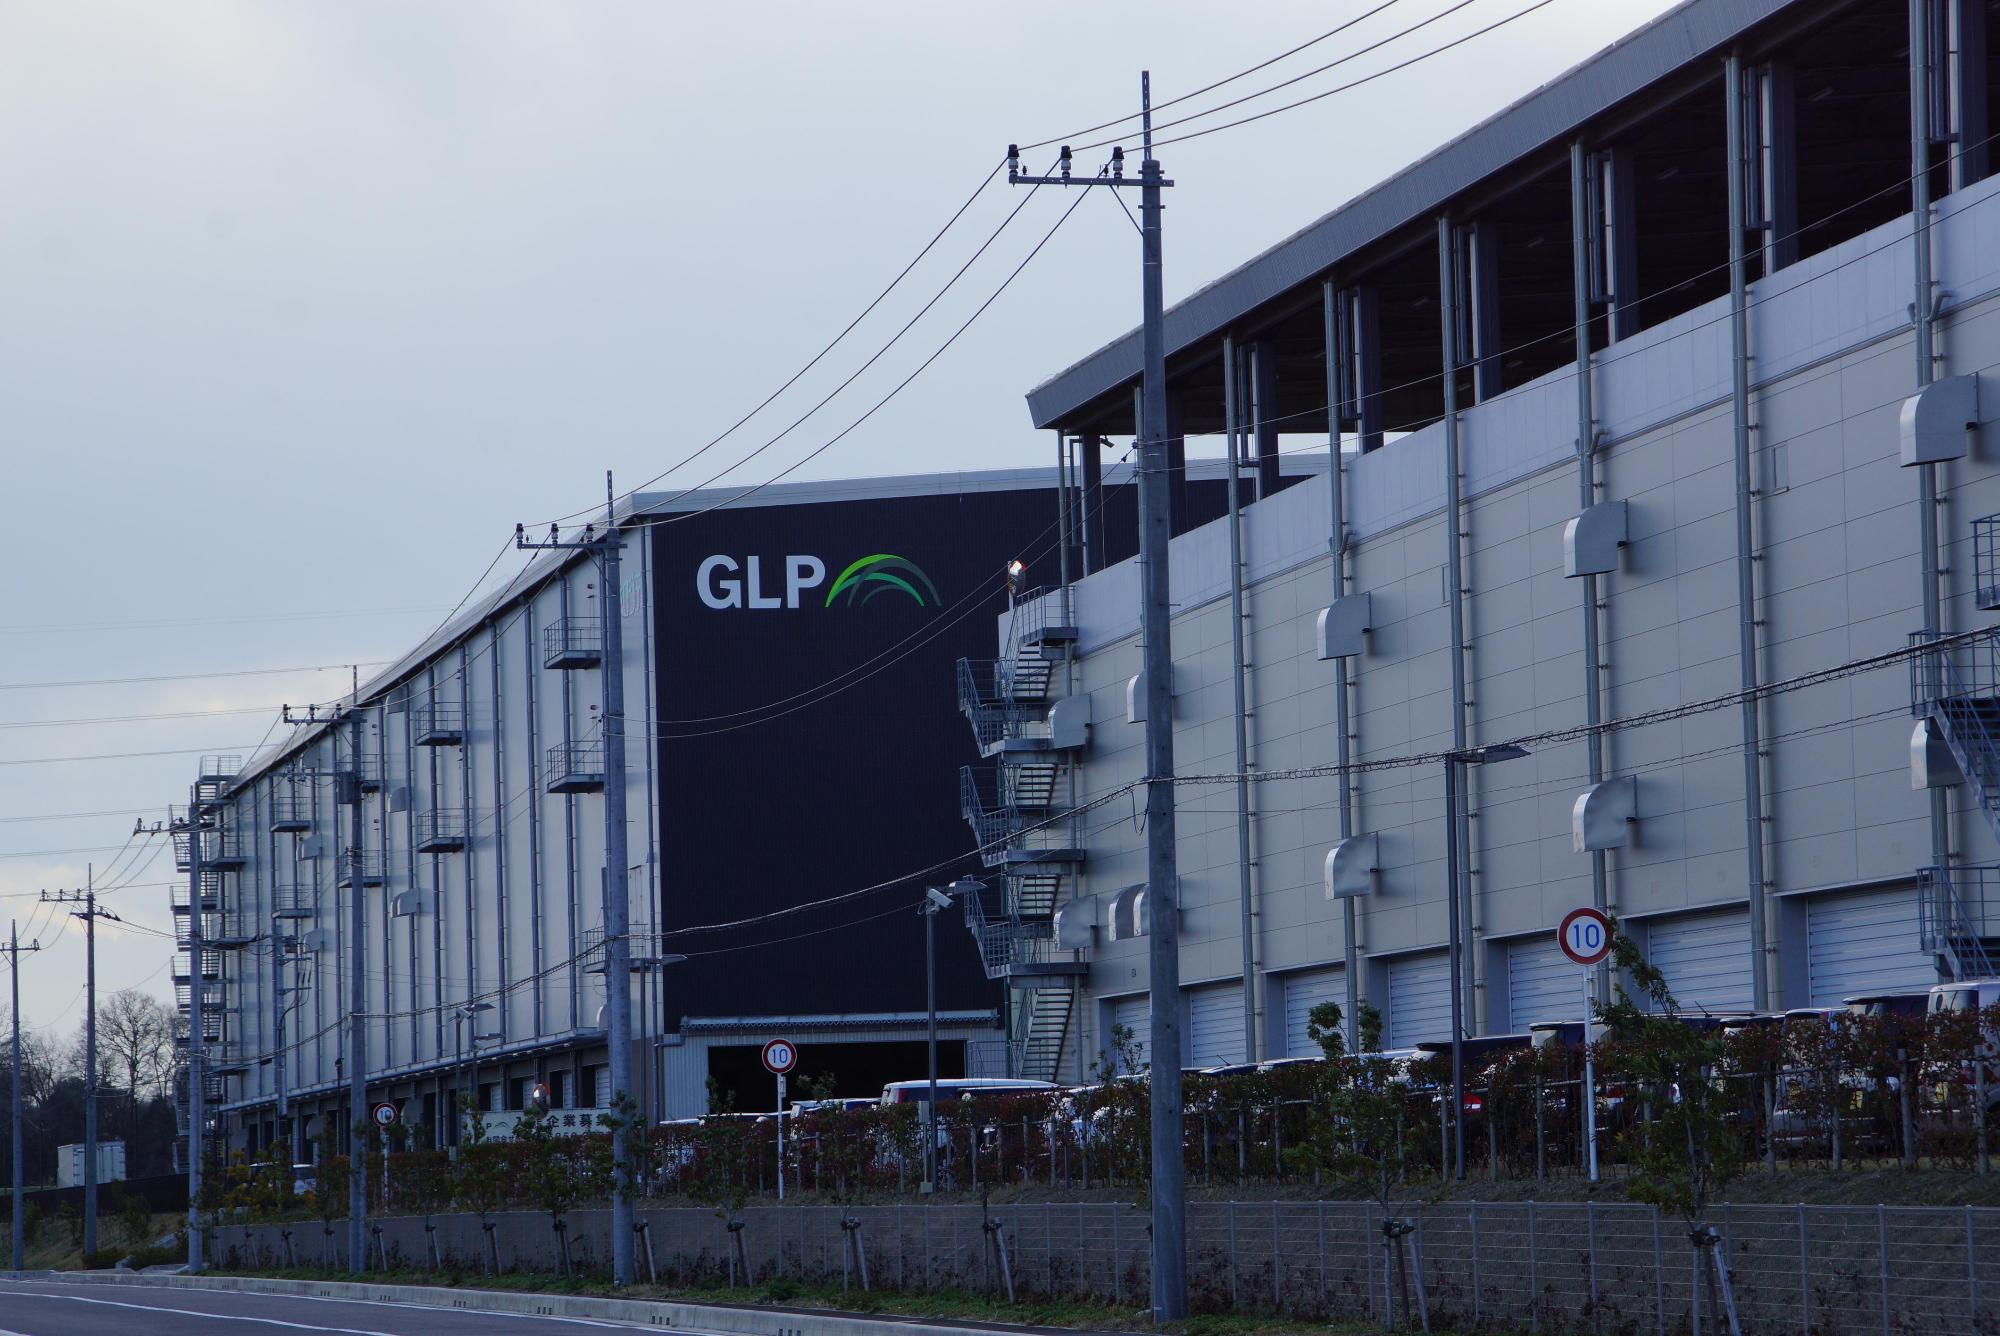 倉庫のような高さのある大きな建物の日本GLP社の外観の写真